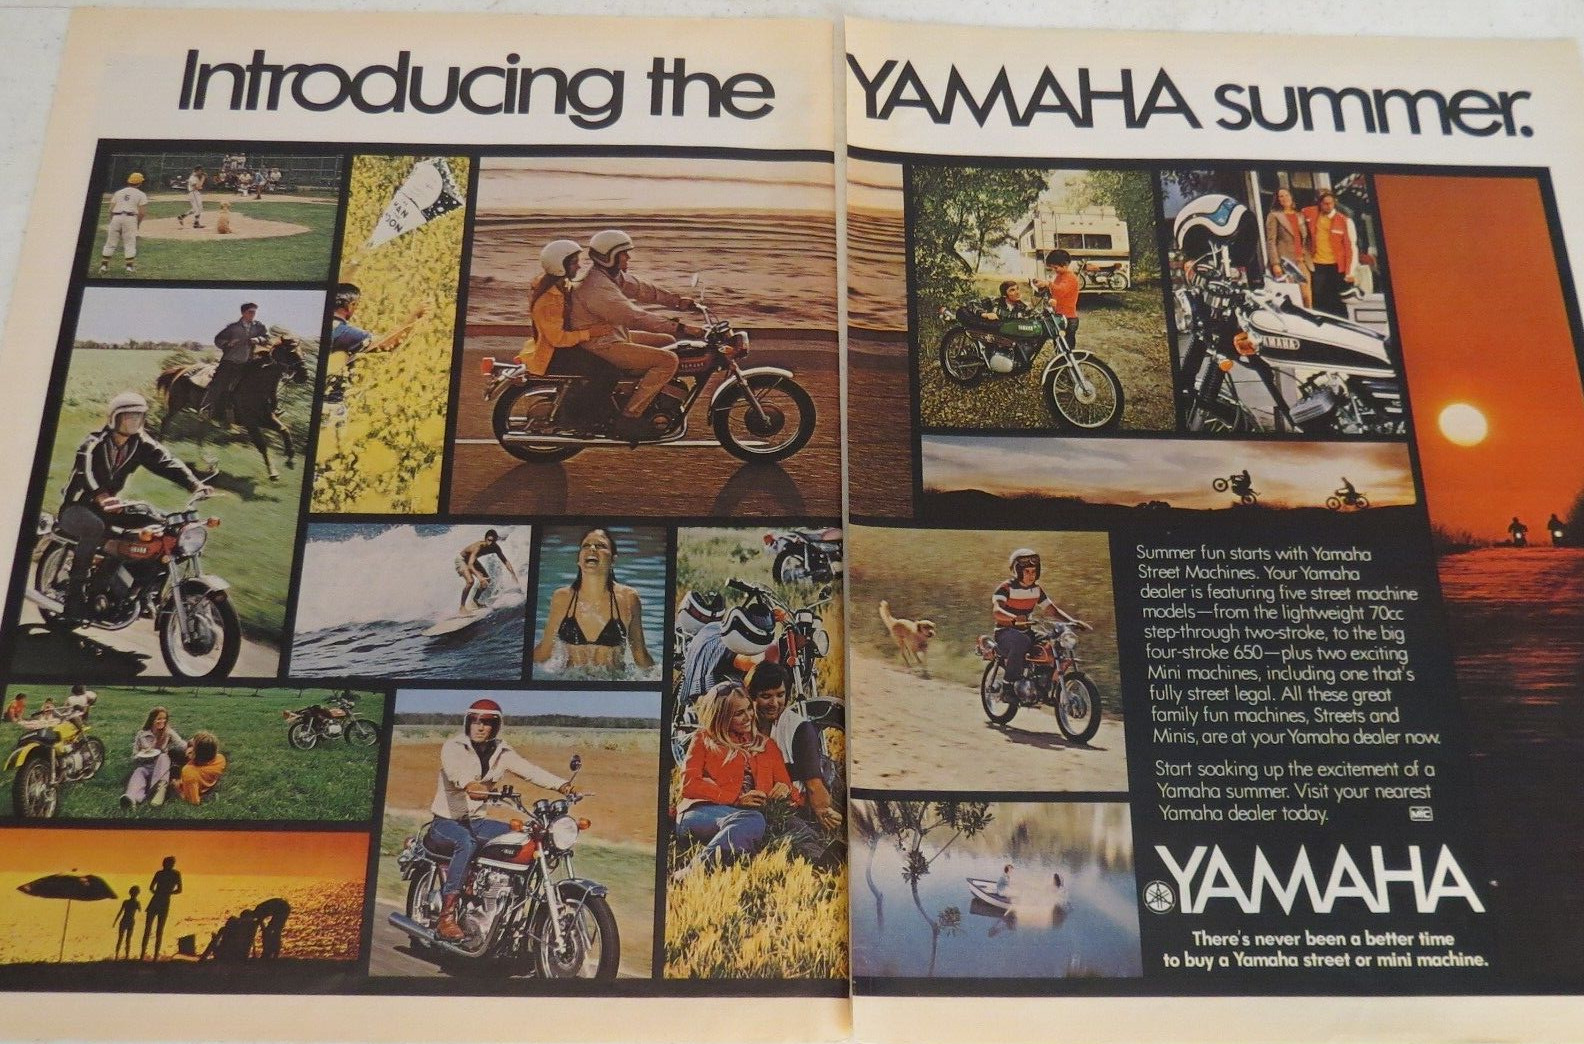 1972 Print Ad Introducing the Yamaha Summer Baseball Beach Camping Motorcycle